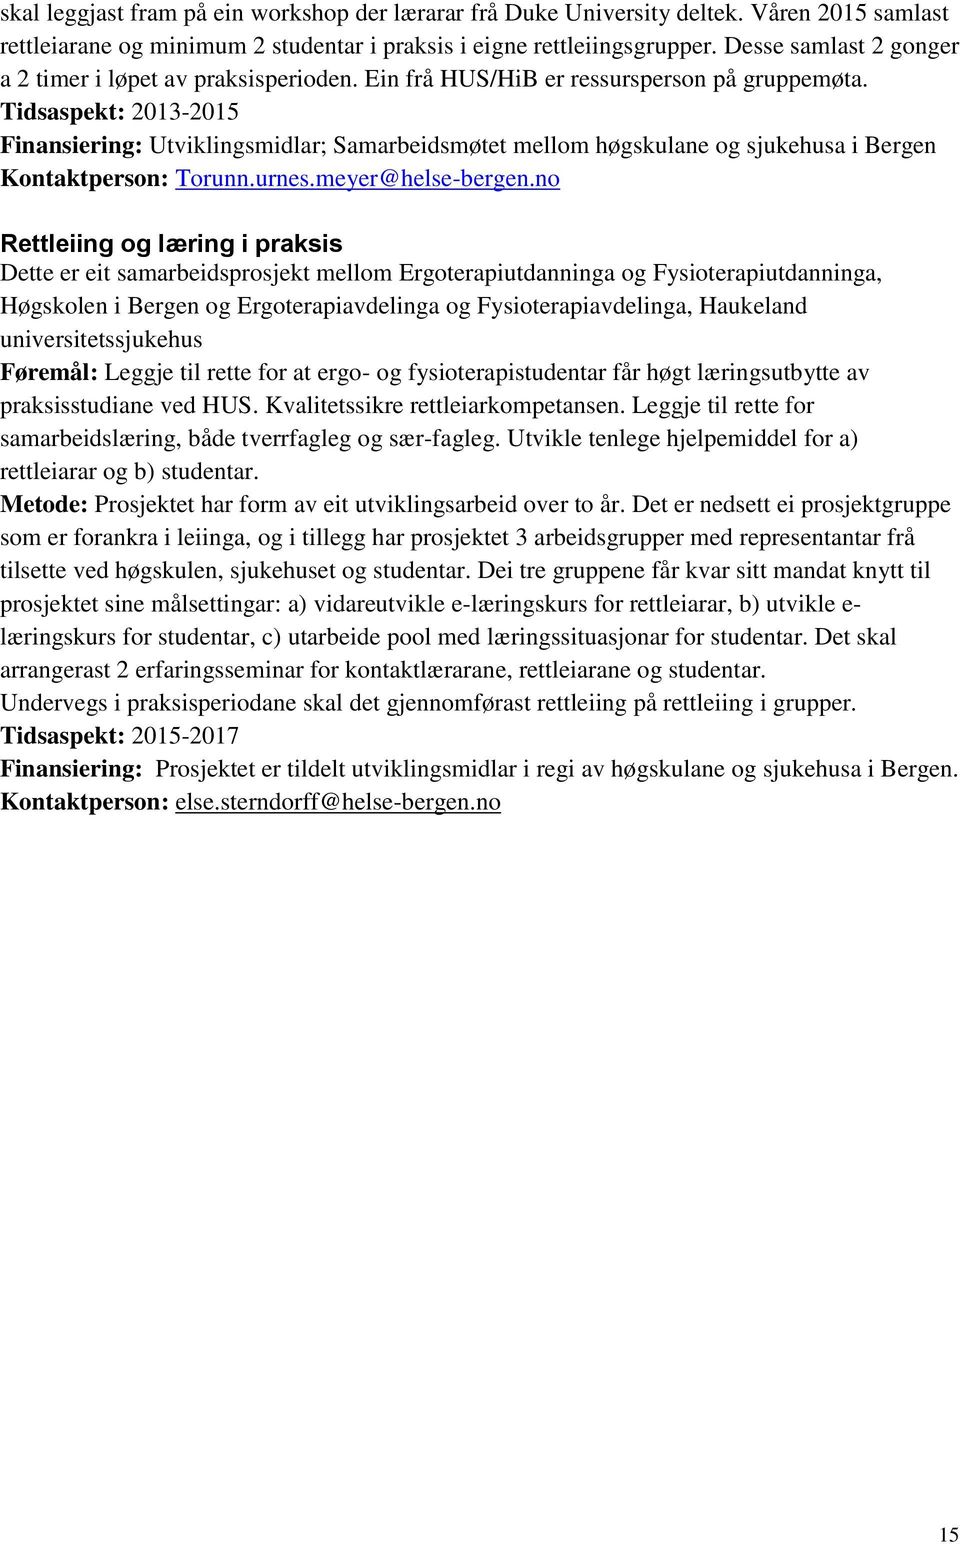 Tidsaspekt: 2013-2015 Finansiering: Utviklingsmidlar; Samarbeidsmøtet mellom høgskulane og sjukehusa i Bergen Kontaktperson: Torunn.urnes.meyer@helse-bergen.